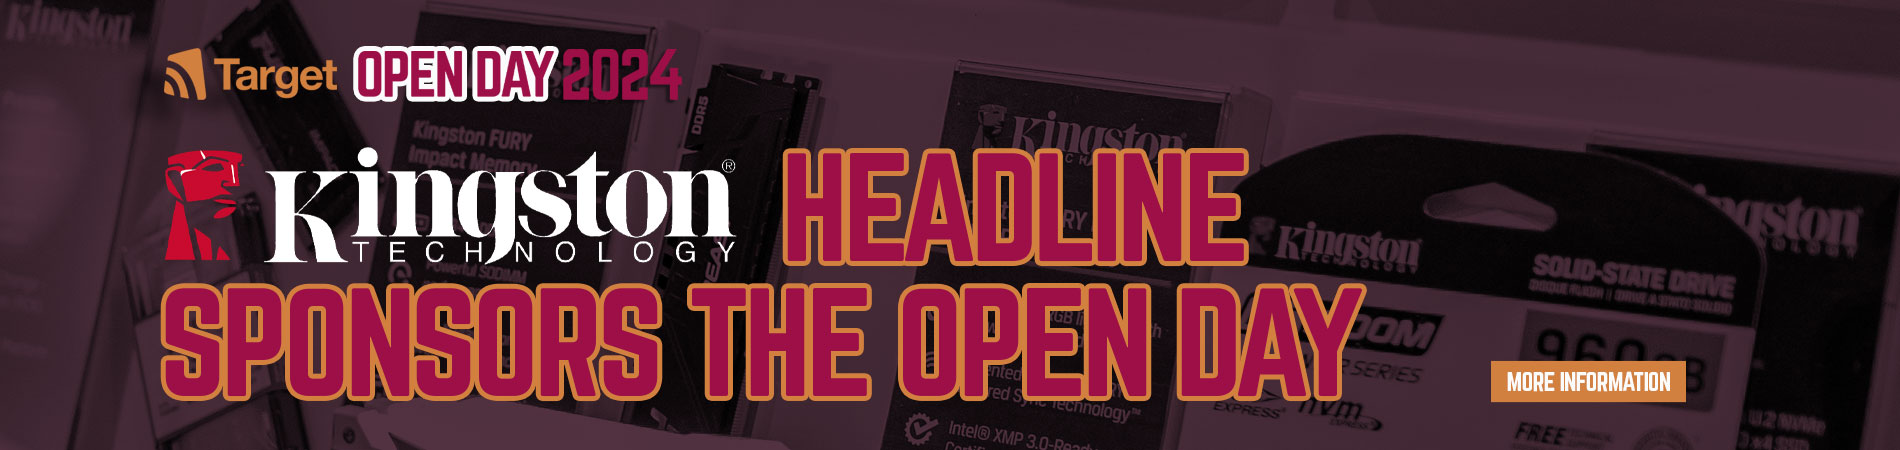 Kingston Headline Sponsors the Open Day